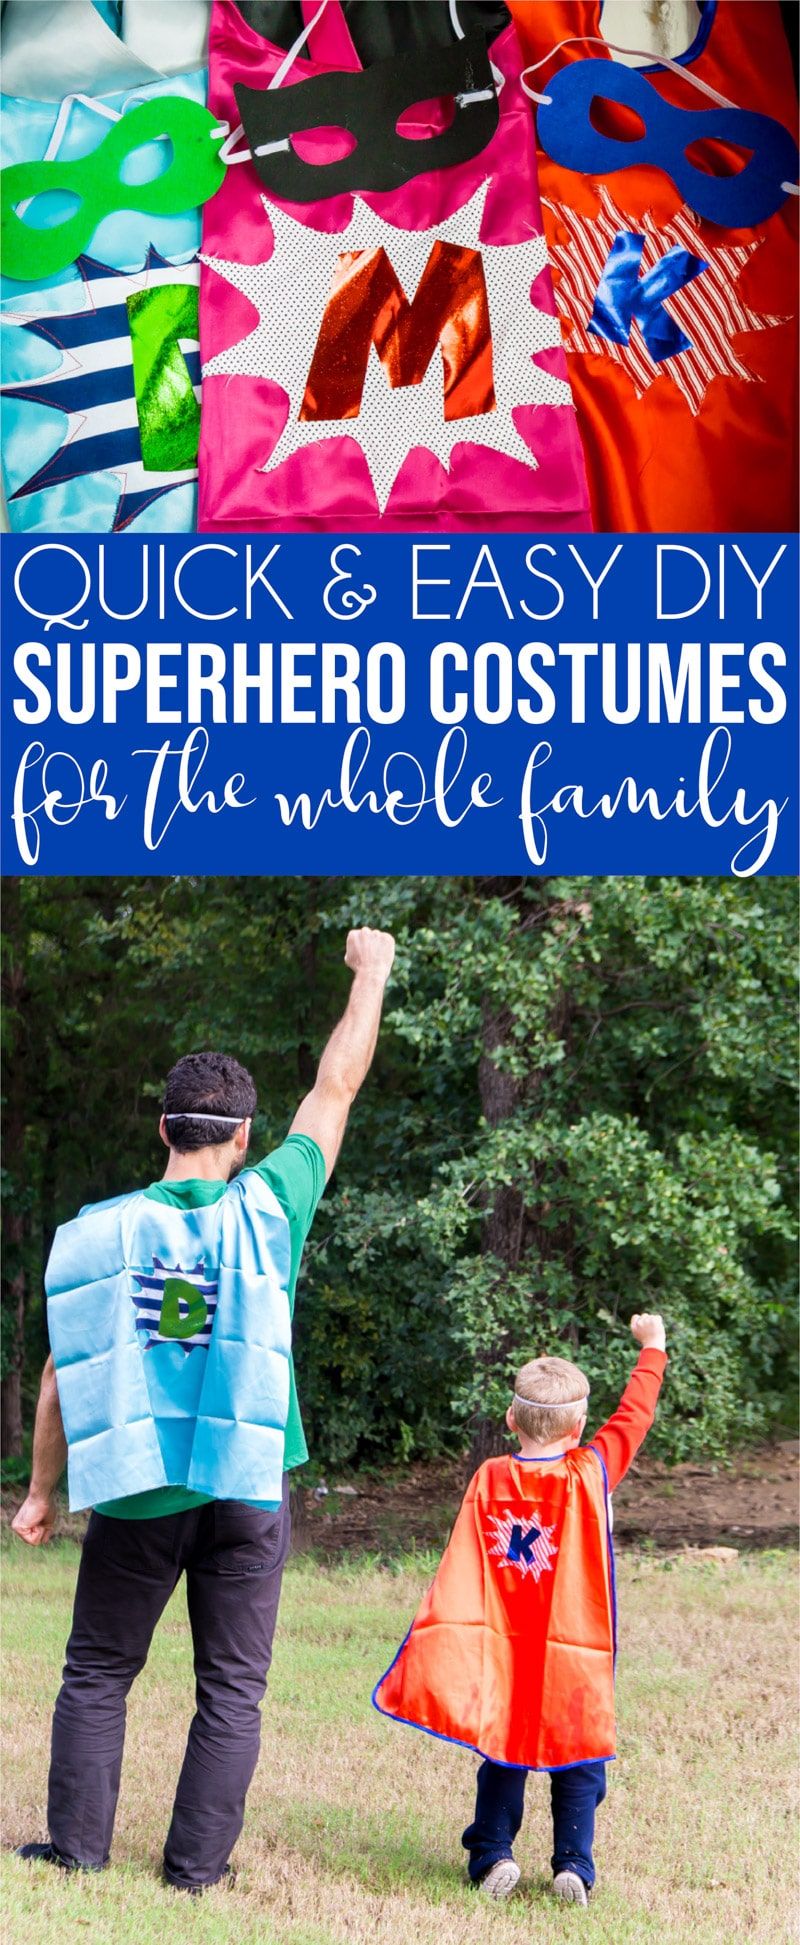 परिवार DIY सुपर हीरो पोशाक विचारों को दिखाने वाली छवियों का एक कोलाज